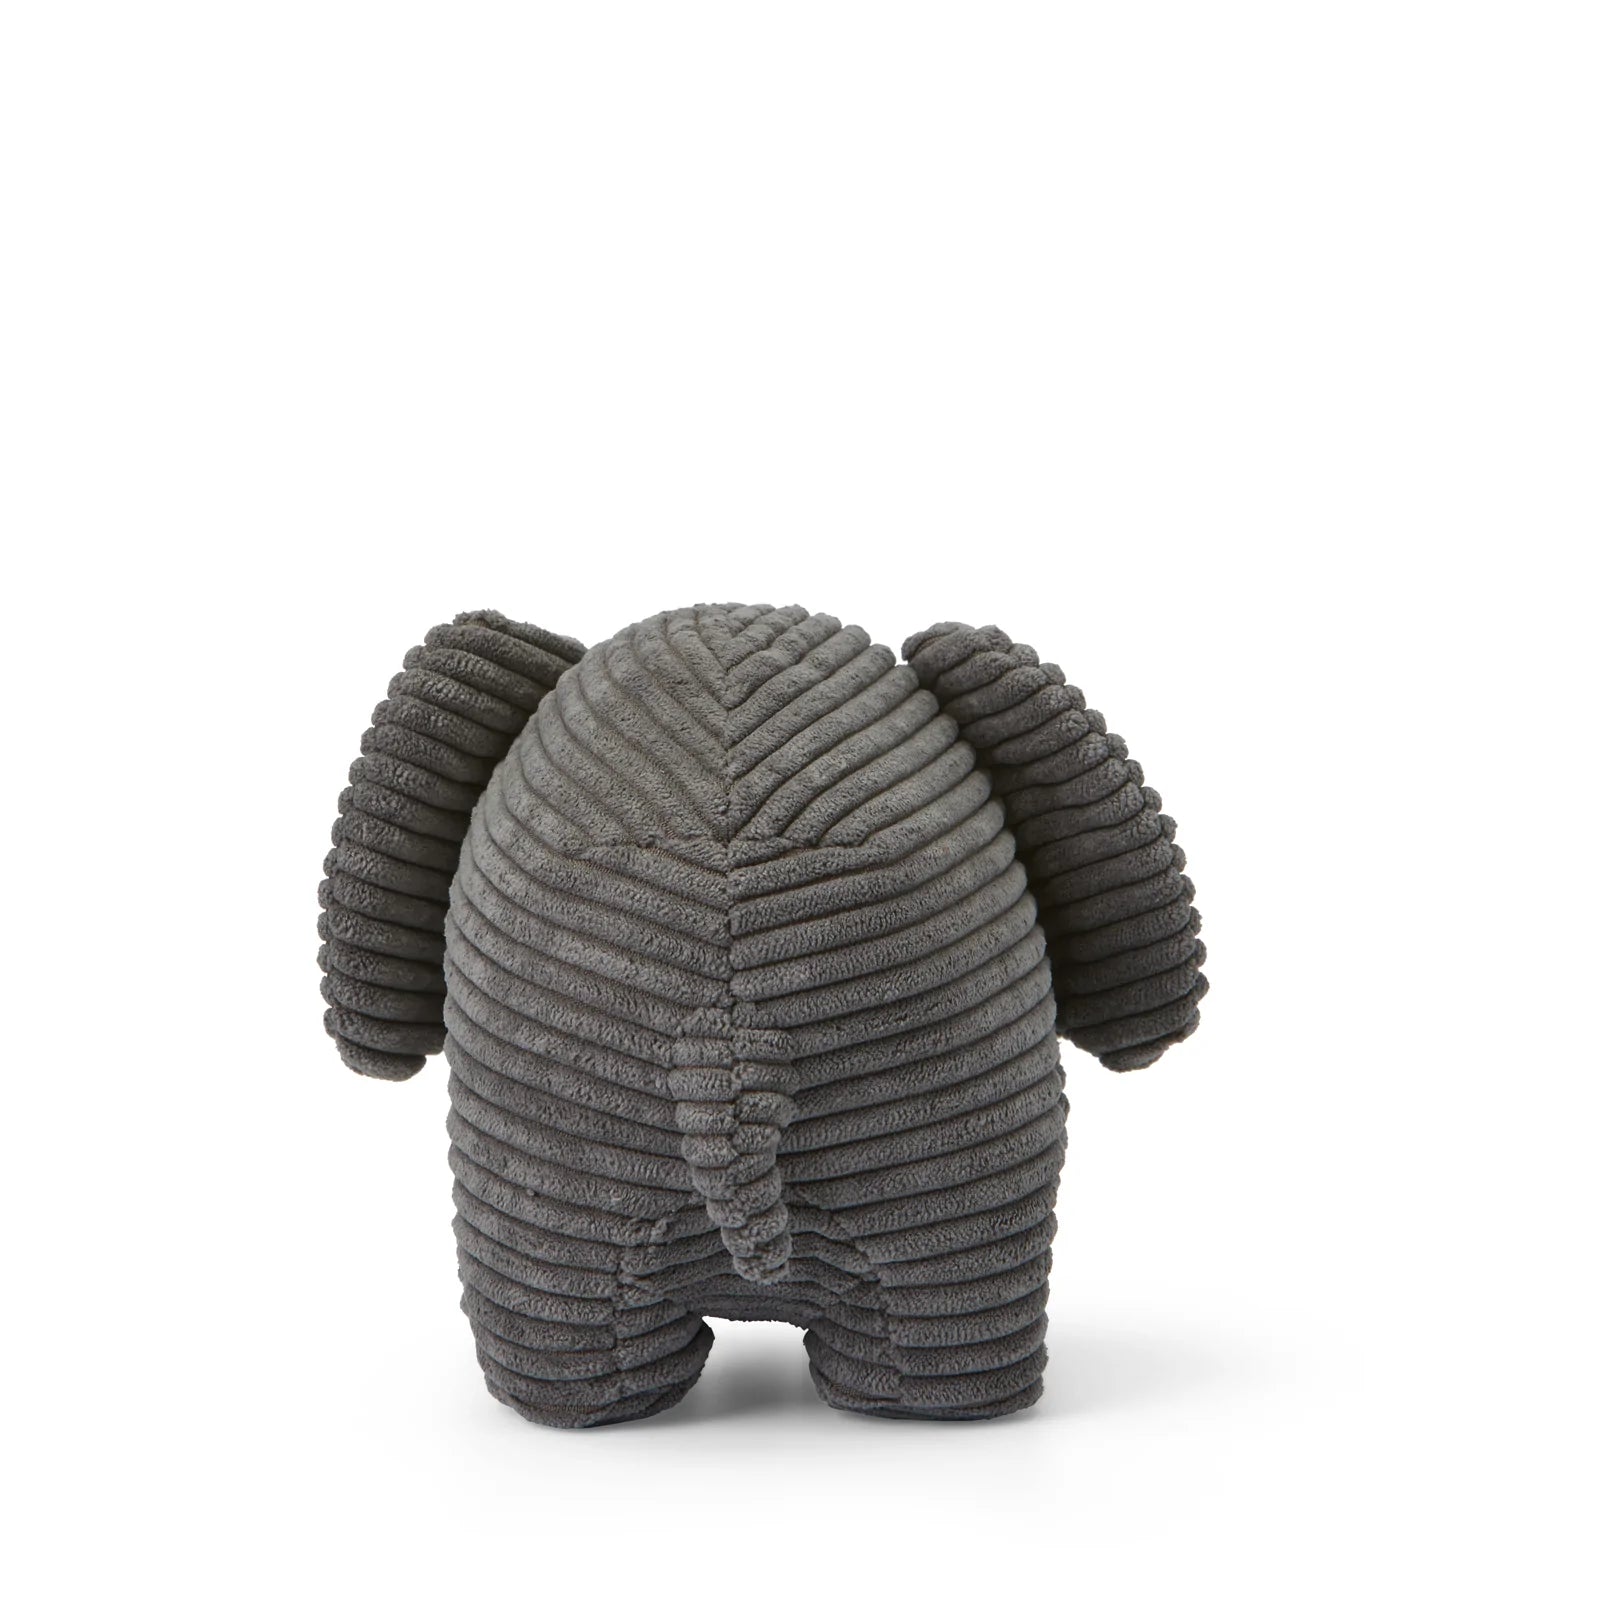 Miffy Elephant in Grey Corduroy